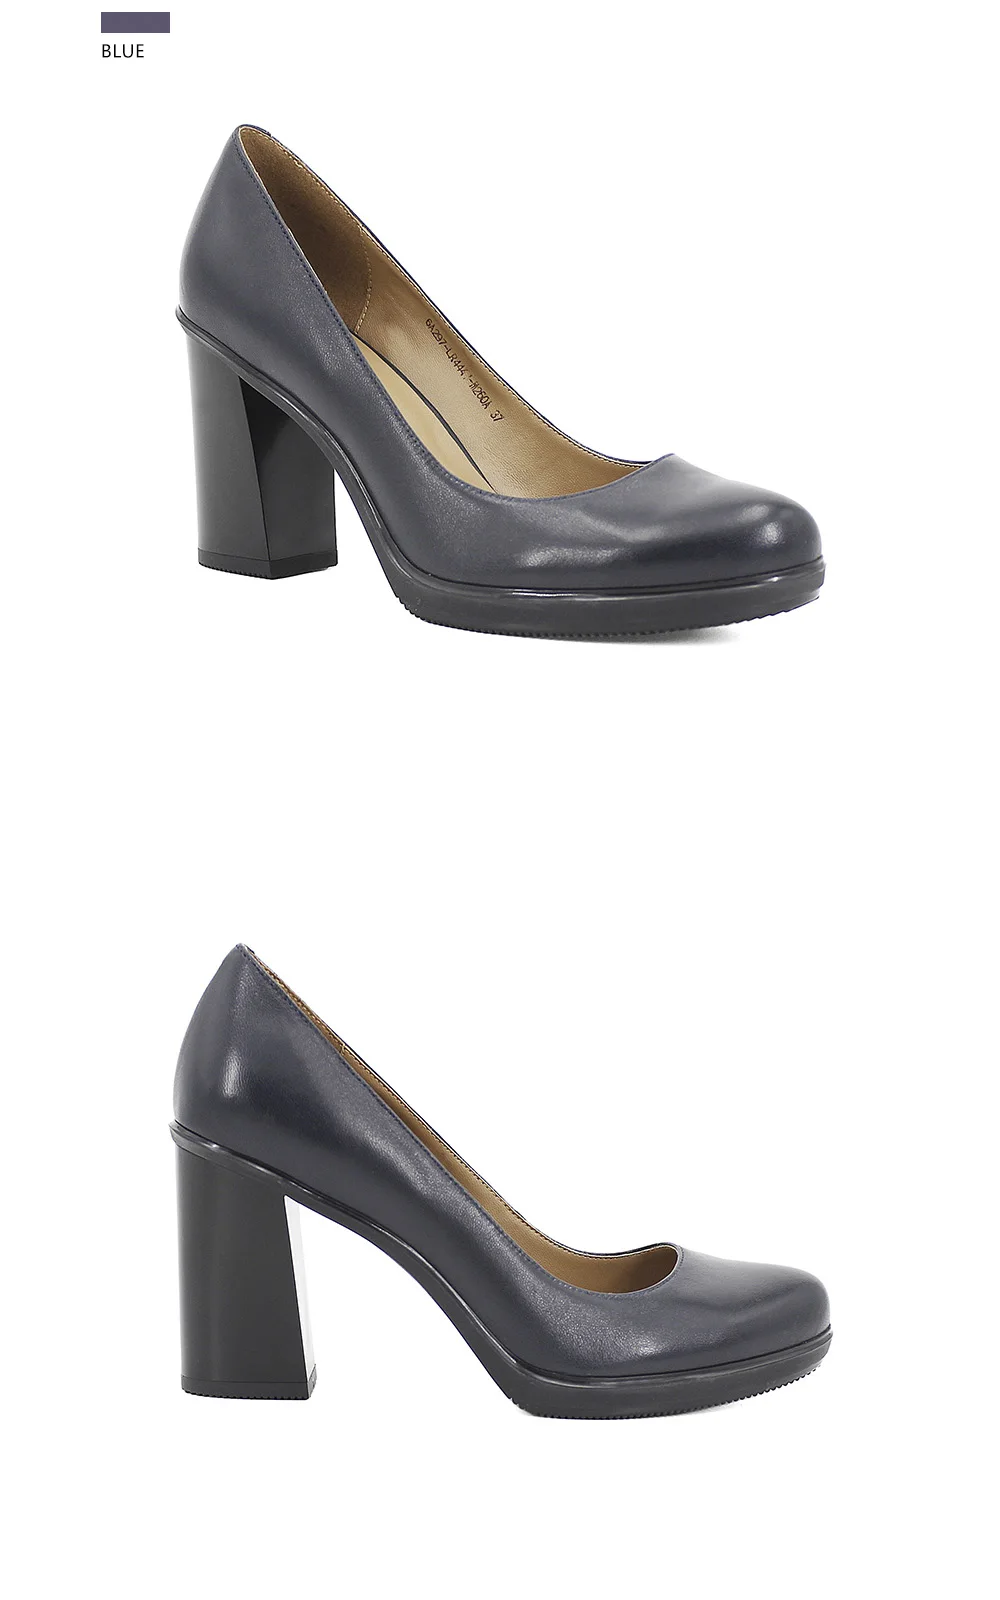 SOPHITINA/Элегантные женские туфли-лодочки; Высококачественные вечерние туфли из натуральной кожи с круглым носком на высоком толстом каблуке и толстой подошве под офисное платье; Всесезонная обувь для женщин D011